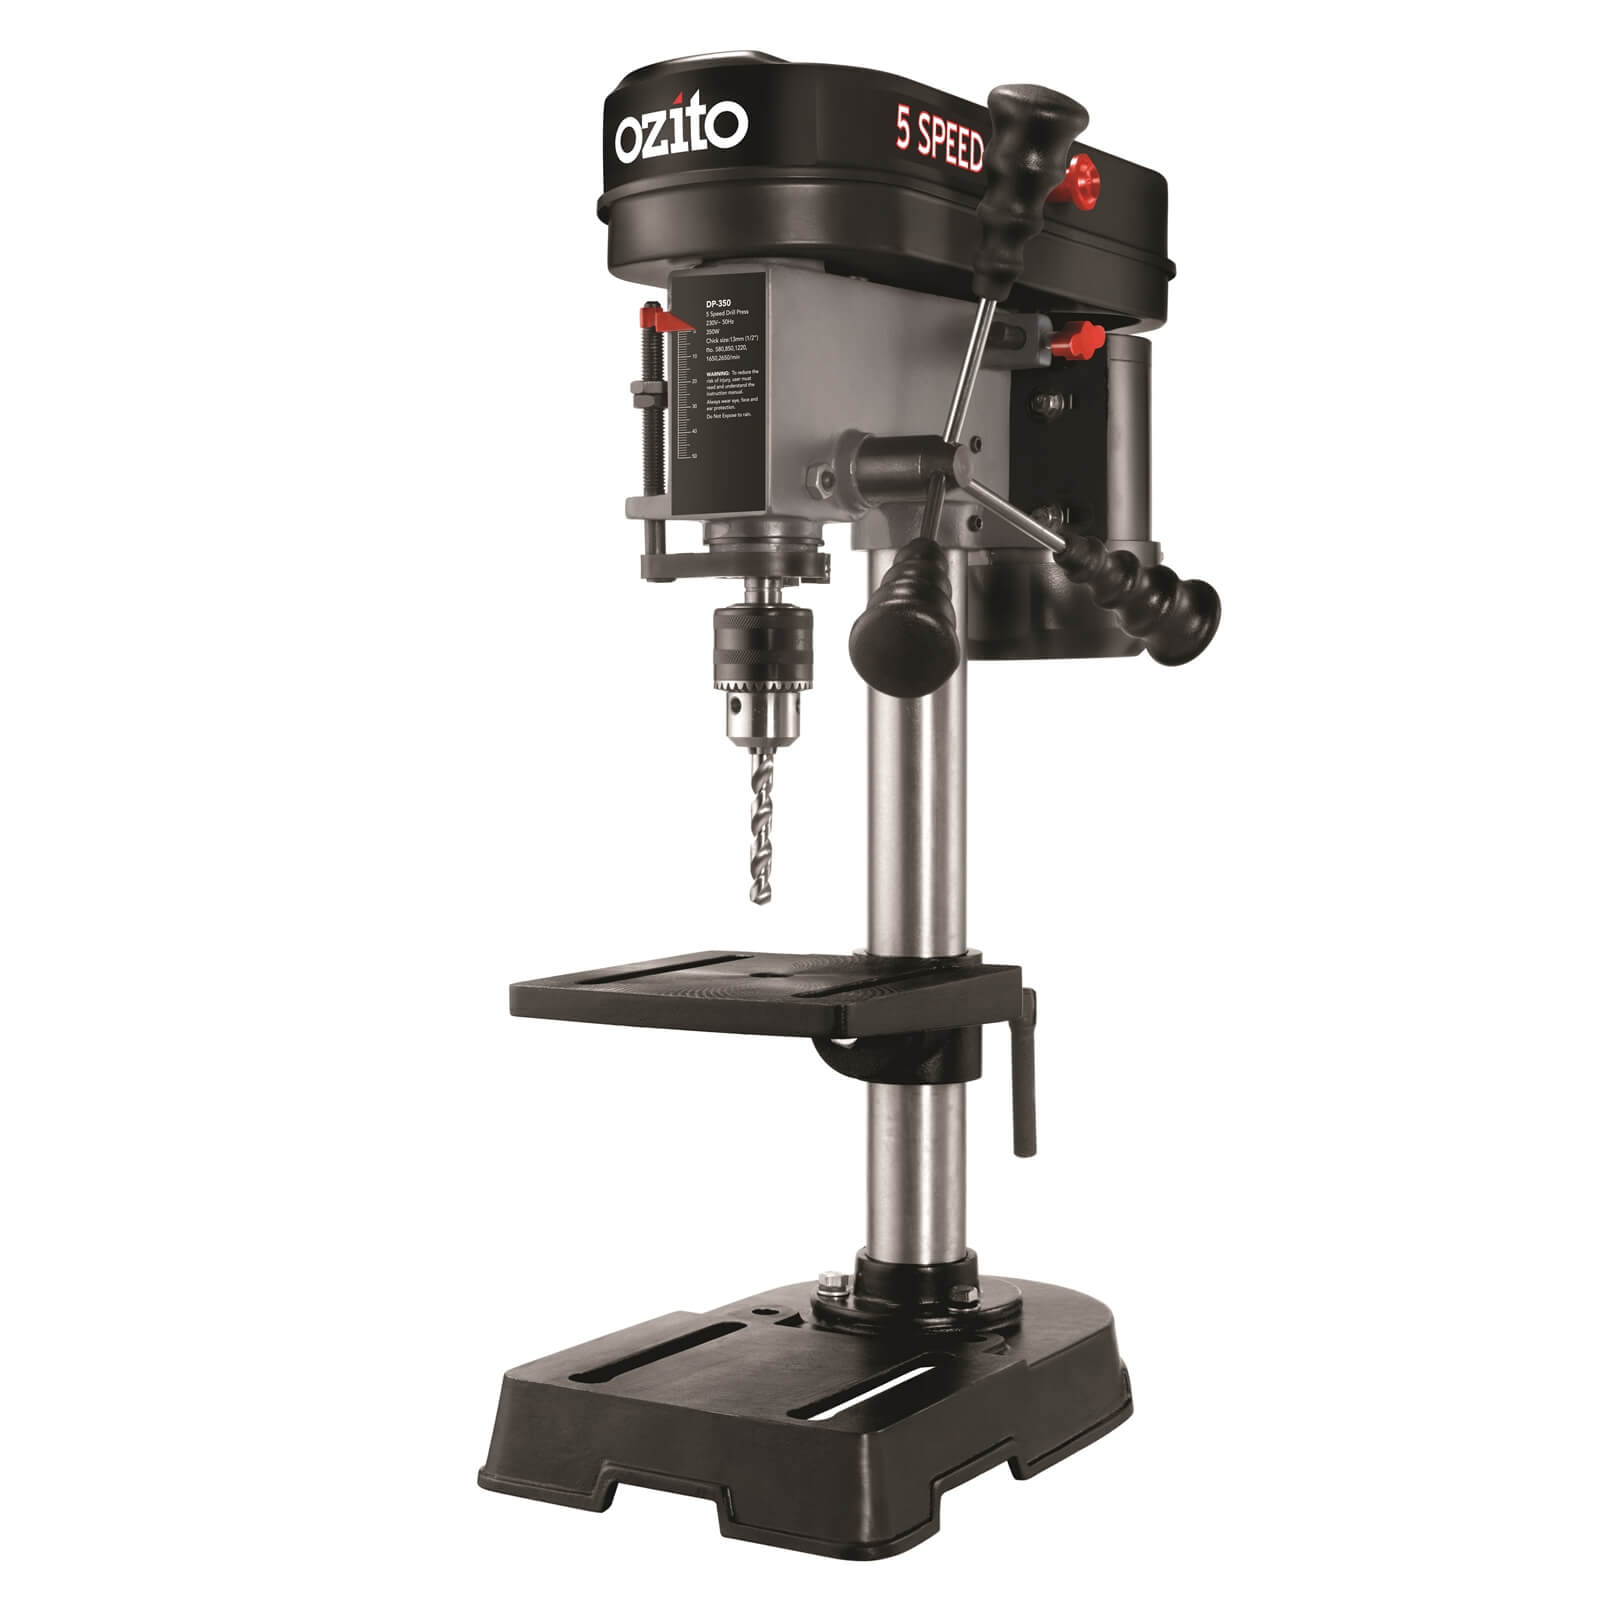 Ozito 350W 13mm Drill Press